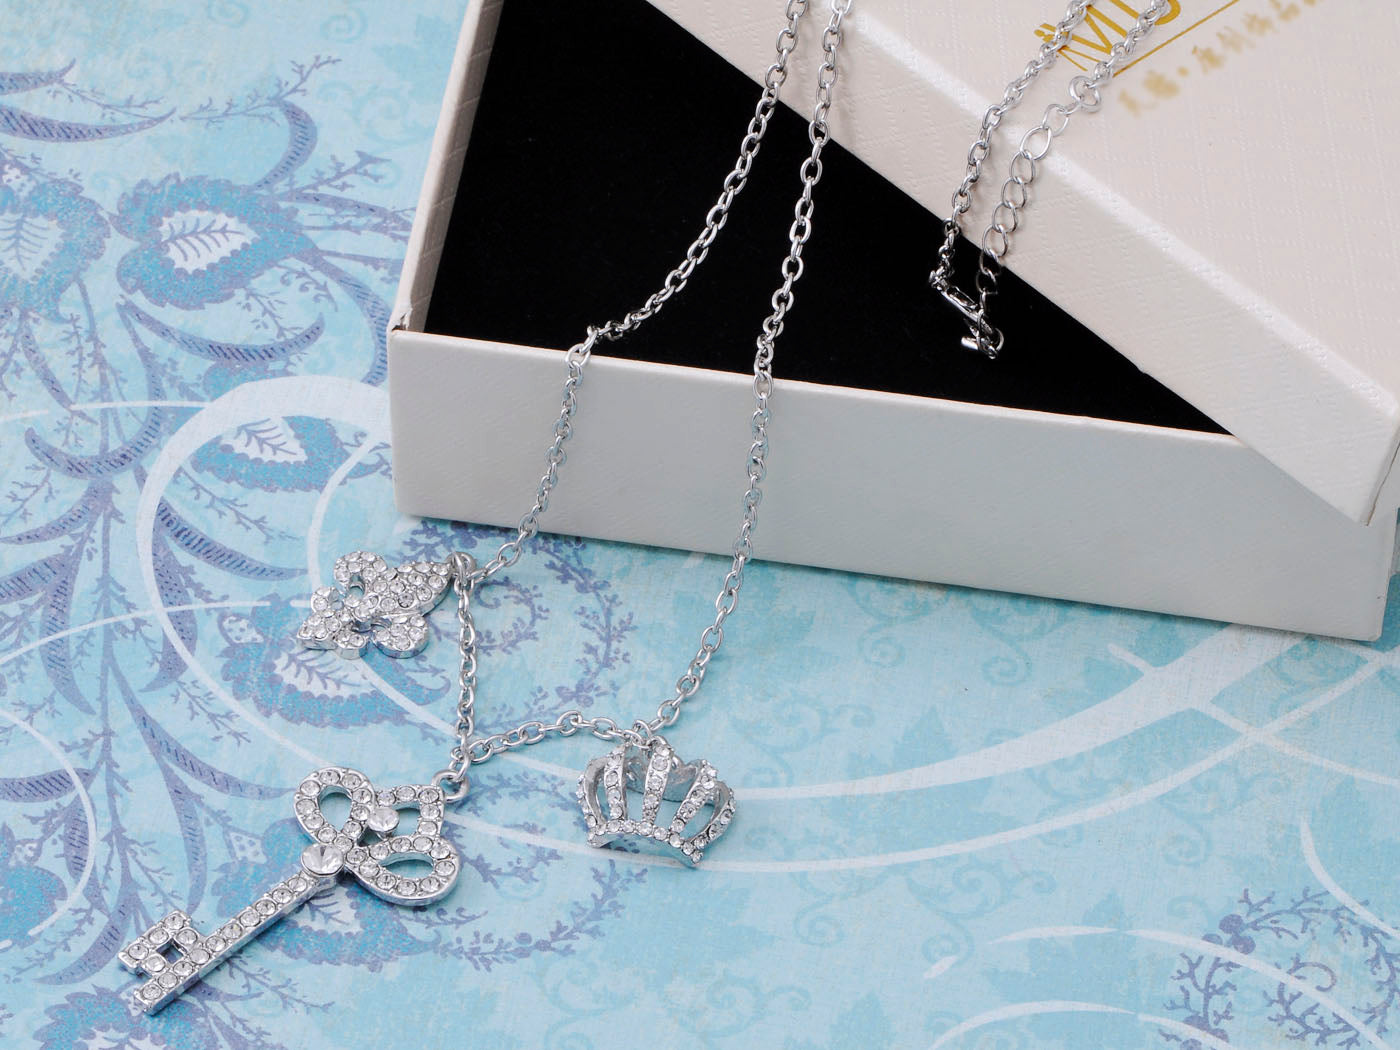 Ice Key Crown Chain Links Fleur De Lis Combination Charm Necklace Pendant